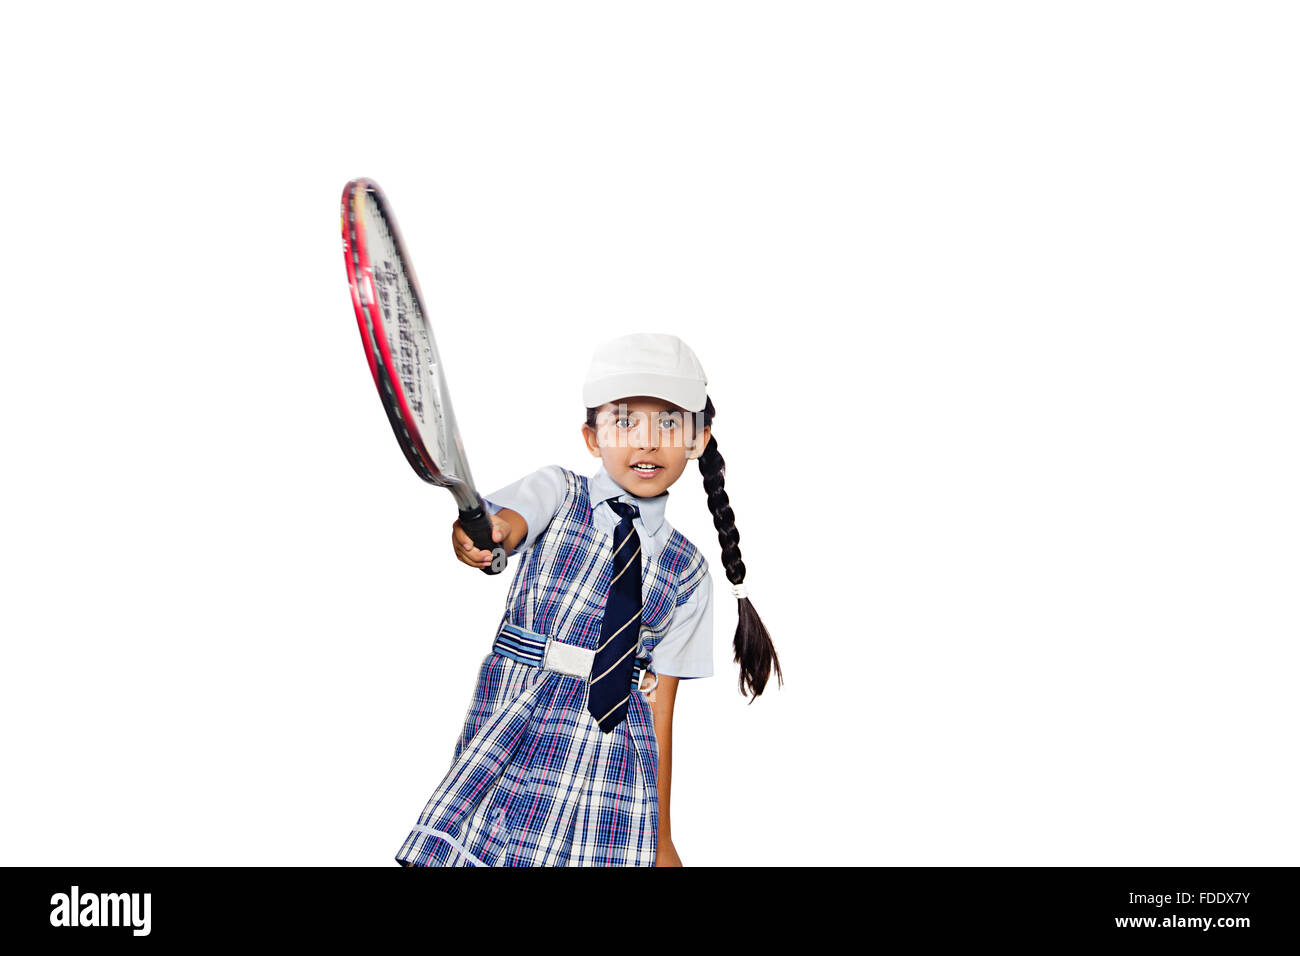 1 personne seule détermination girl smiling standing école raquette tennis étudiant Banque D'Images